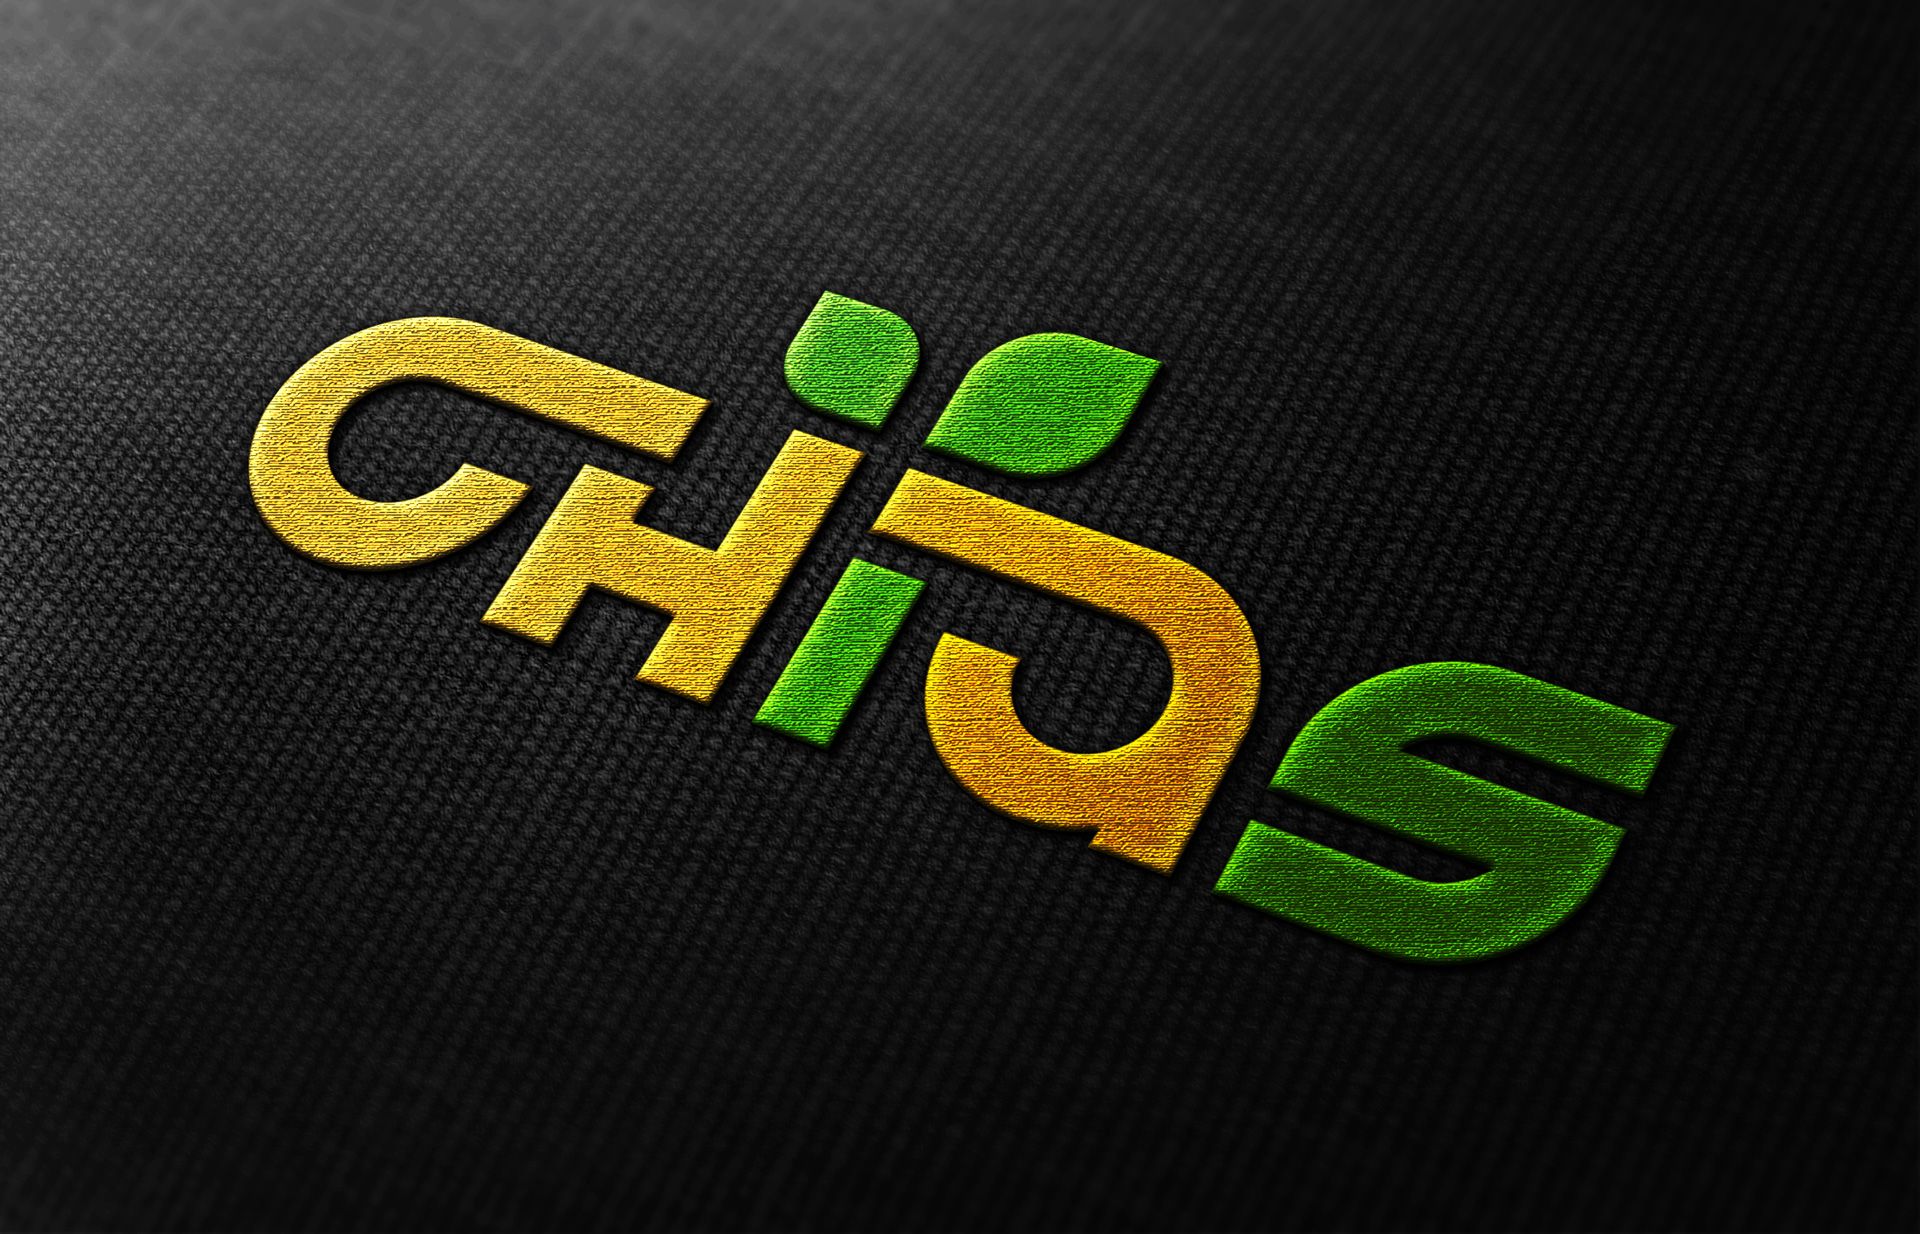 Логотип для компании Chias. Органические продукты. - дизайнер Advokat72